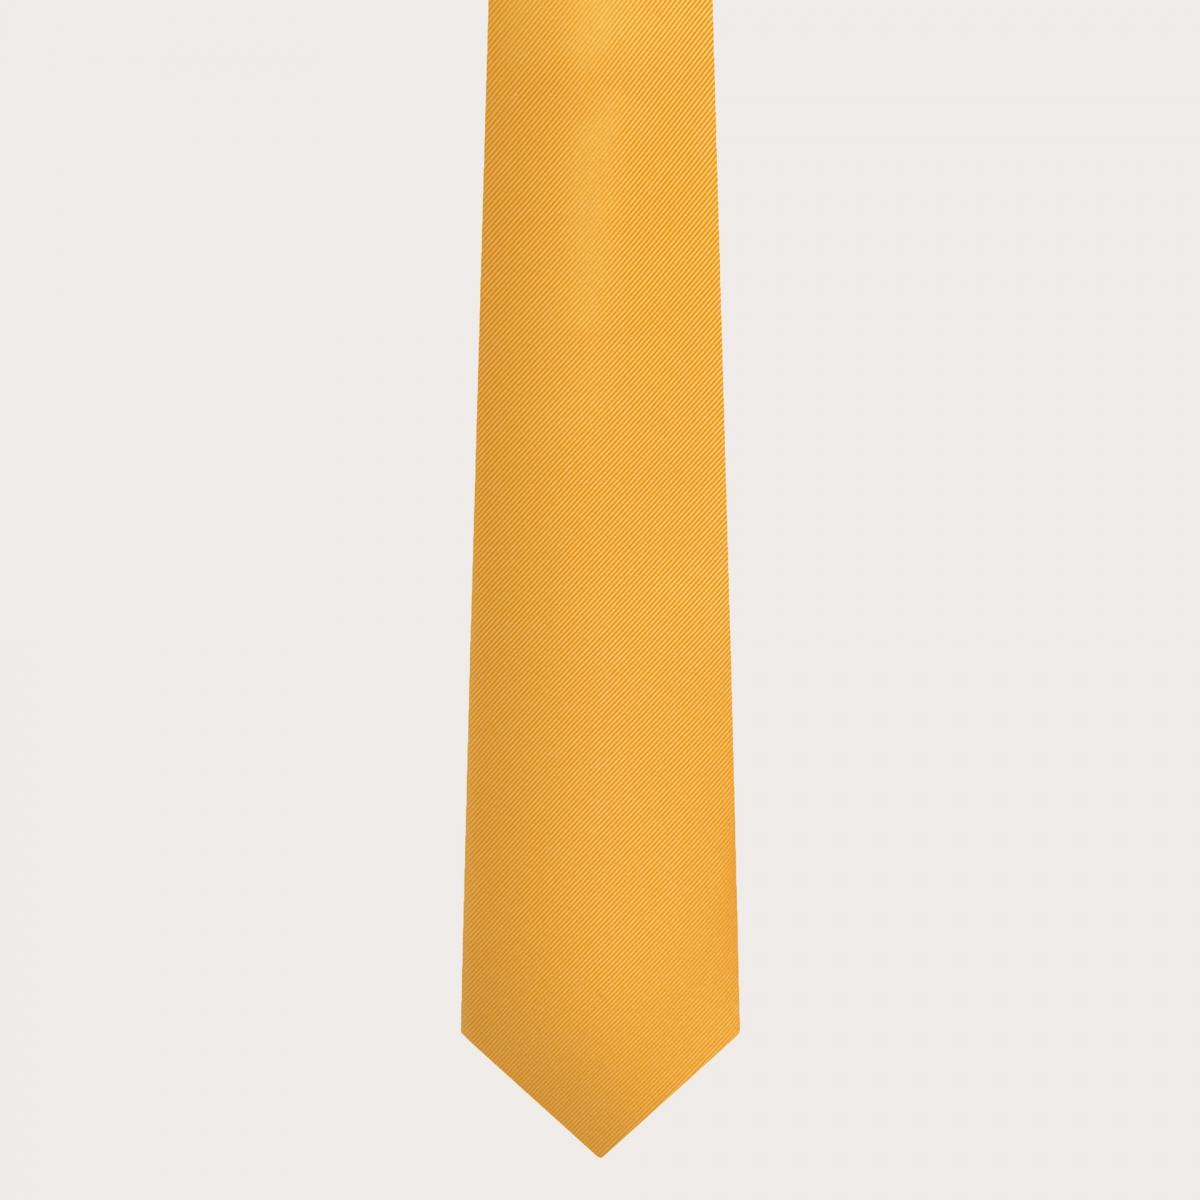 BRUCLE Set elegante di bretelle e cravatta in seta, giallo